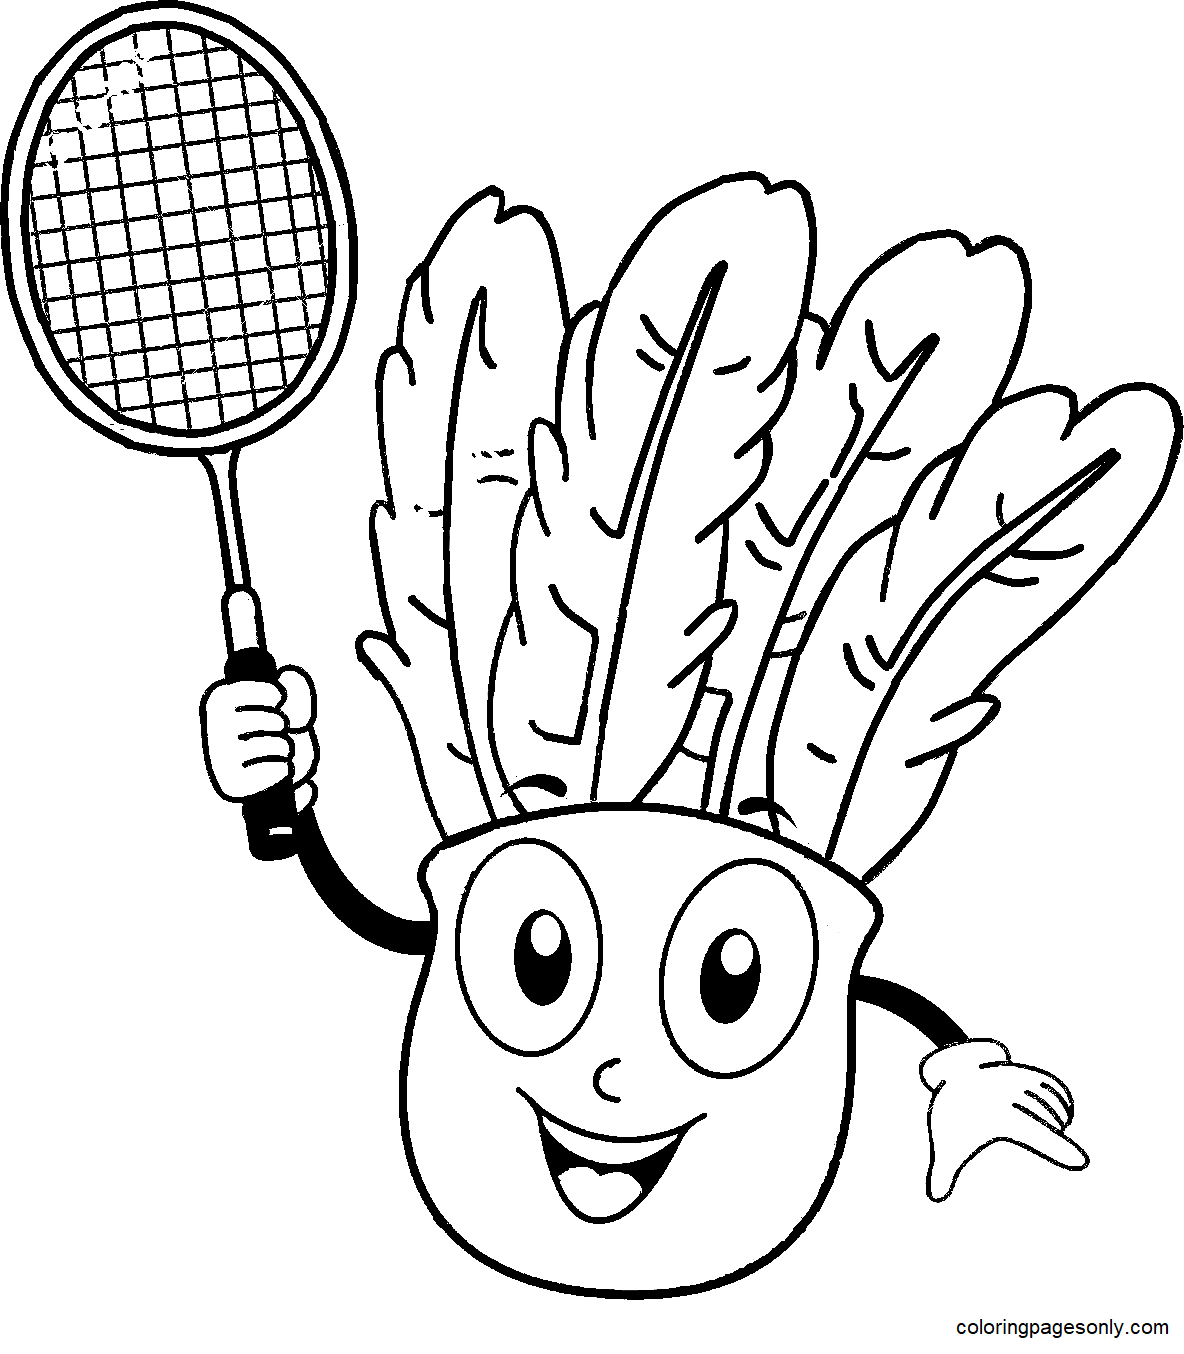 Desenho de mascote peteca segurando uma raquete de badminton para colorir